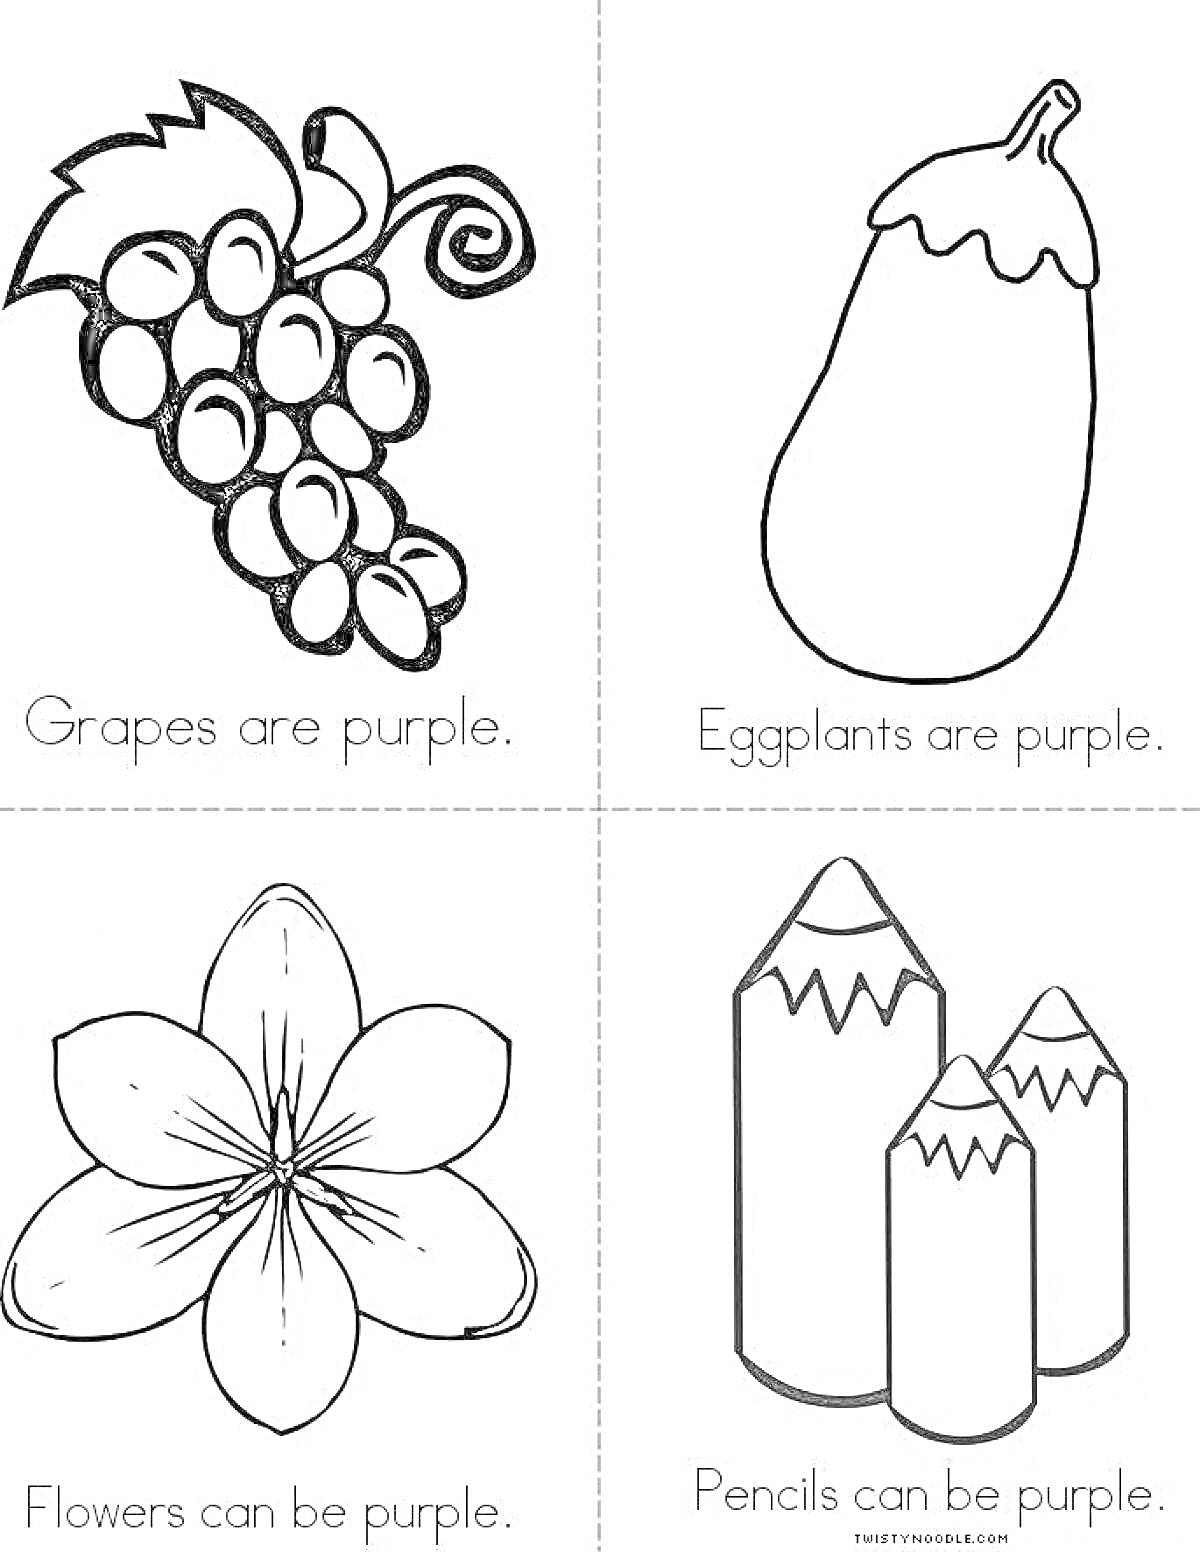 Раскраска Виноград, баклажан, цветок и карандаши, которые могут быть фиолетовыми